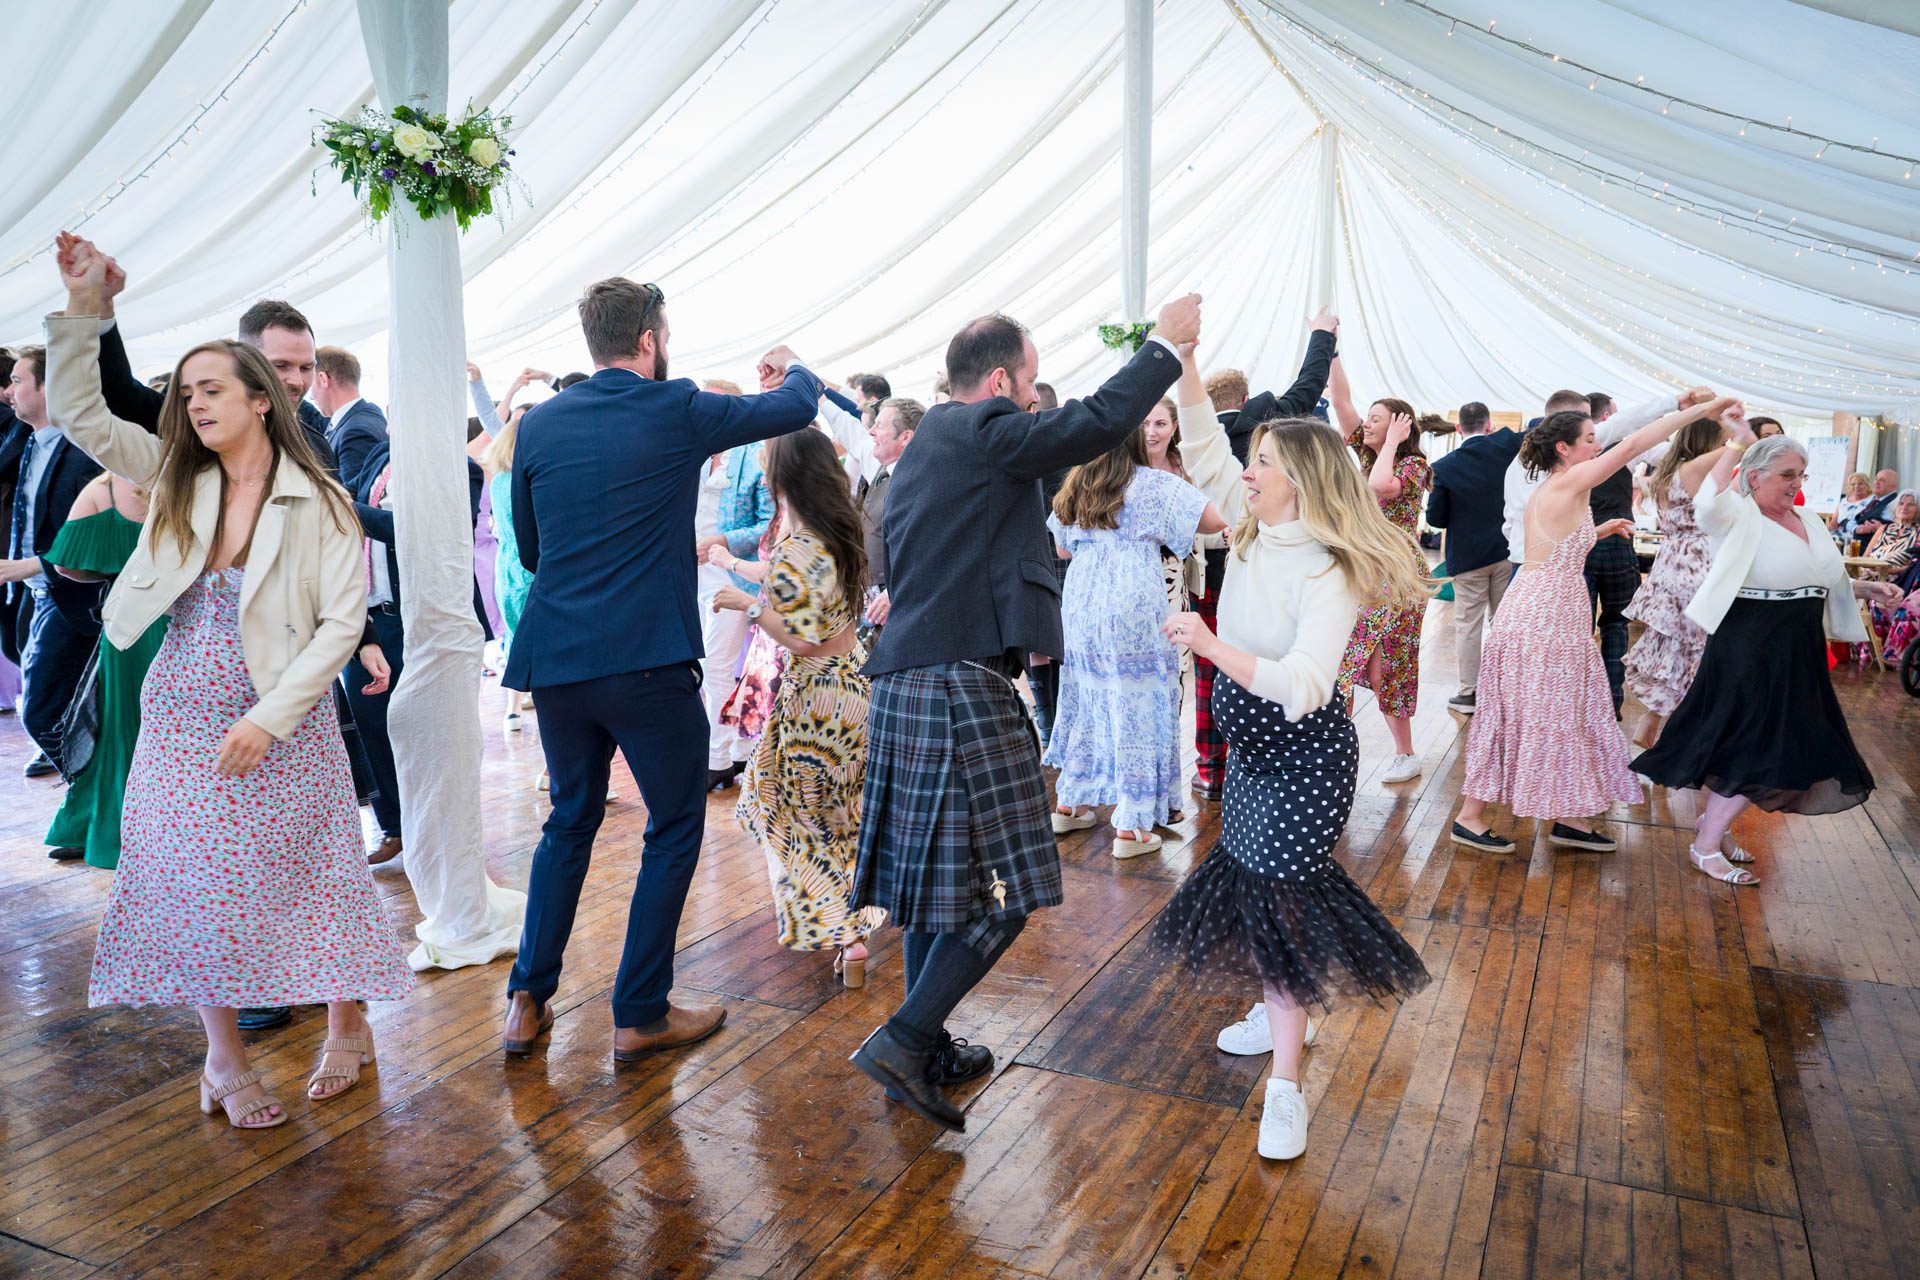 Scottish wedding ceilidh